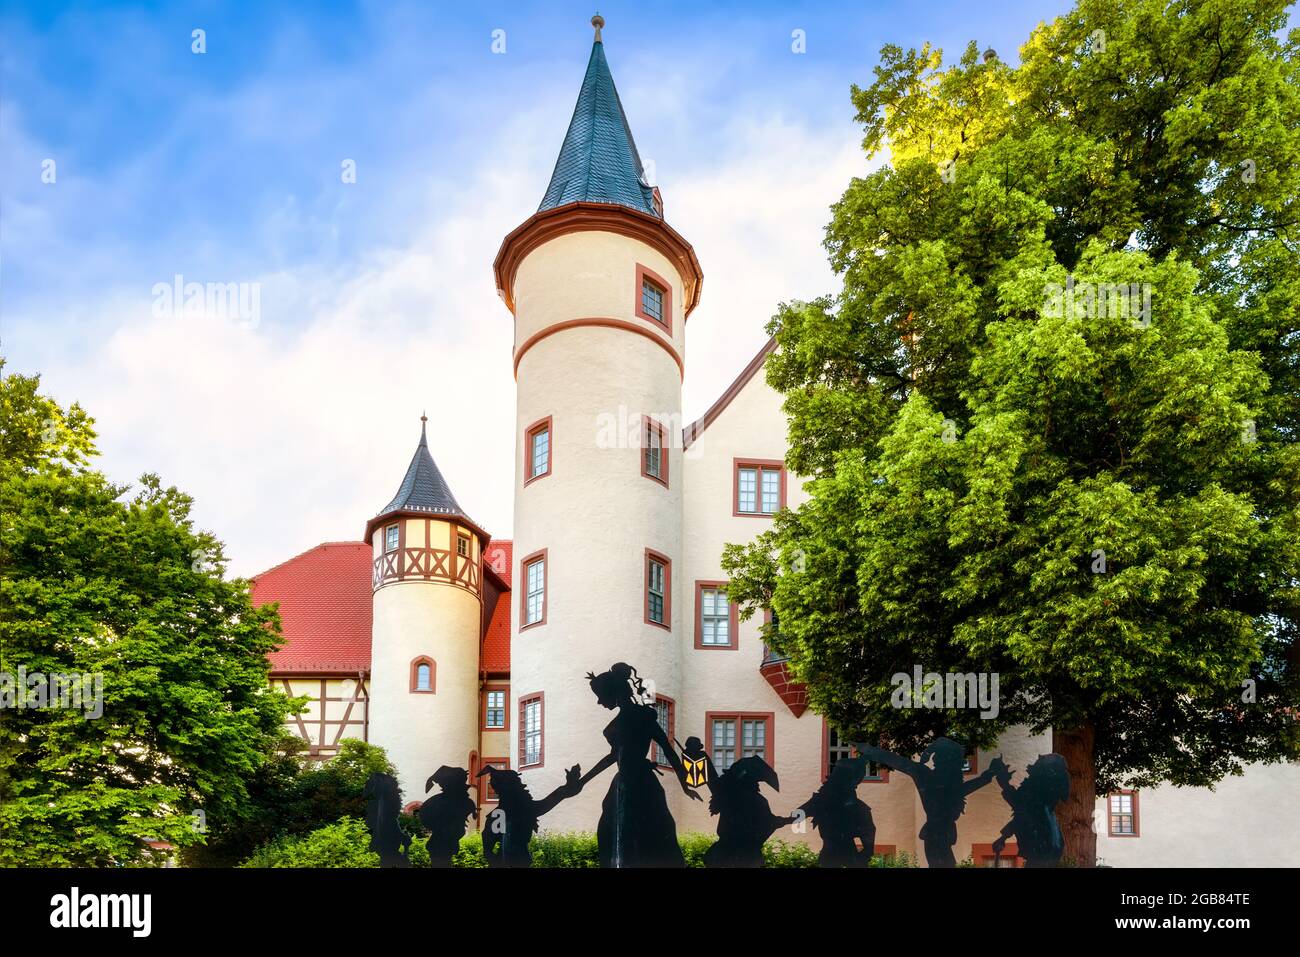 Snow White and the seven Dwarfs in Lohr am Main, Bavaria - Schneewittchen und die sieben Zwerge vor dem Schneewitchenschloss Stock Photo